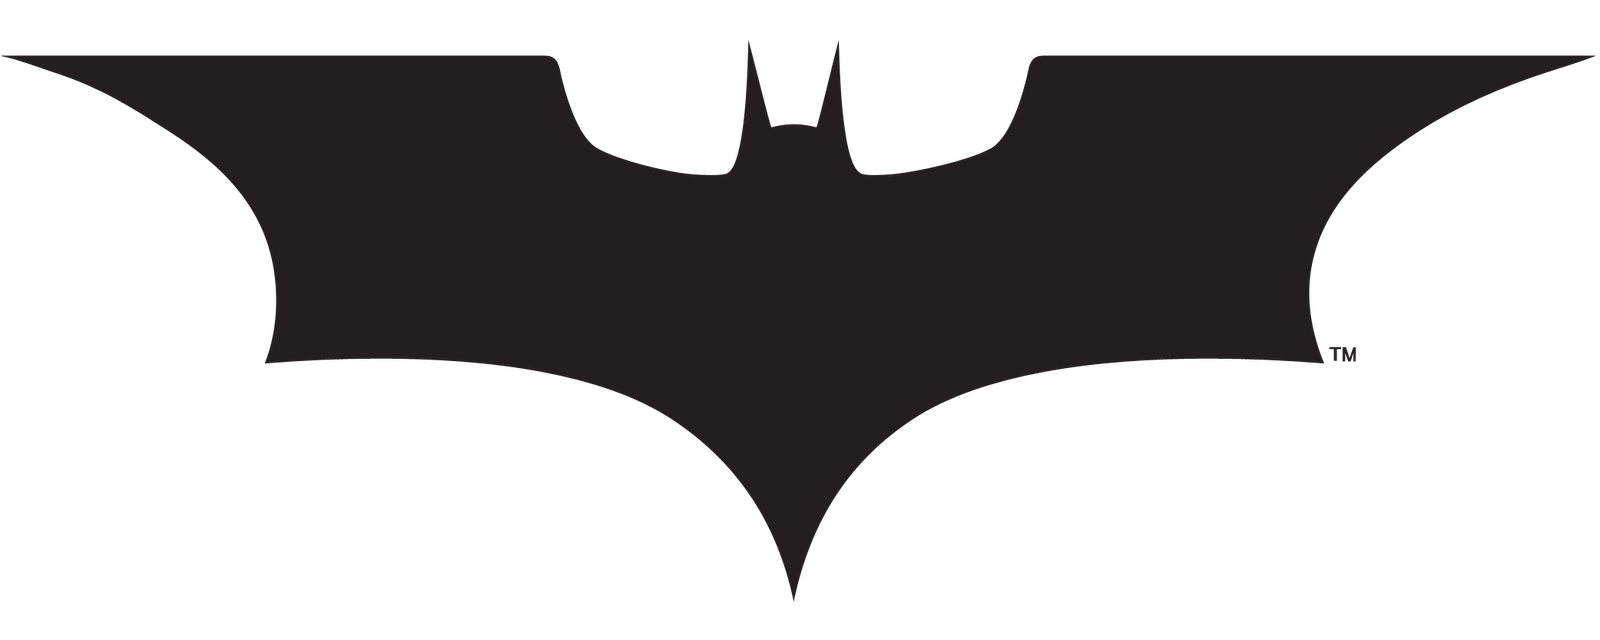 Batman Icon, Batman logo transparent background PNG clipart | HiClipart